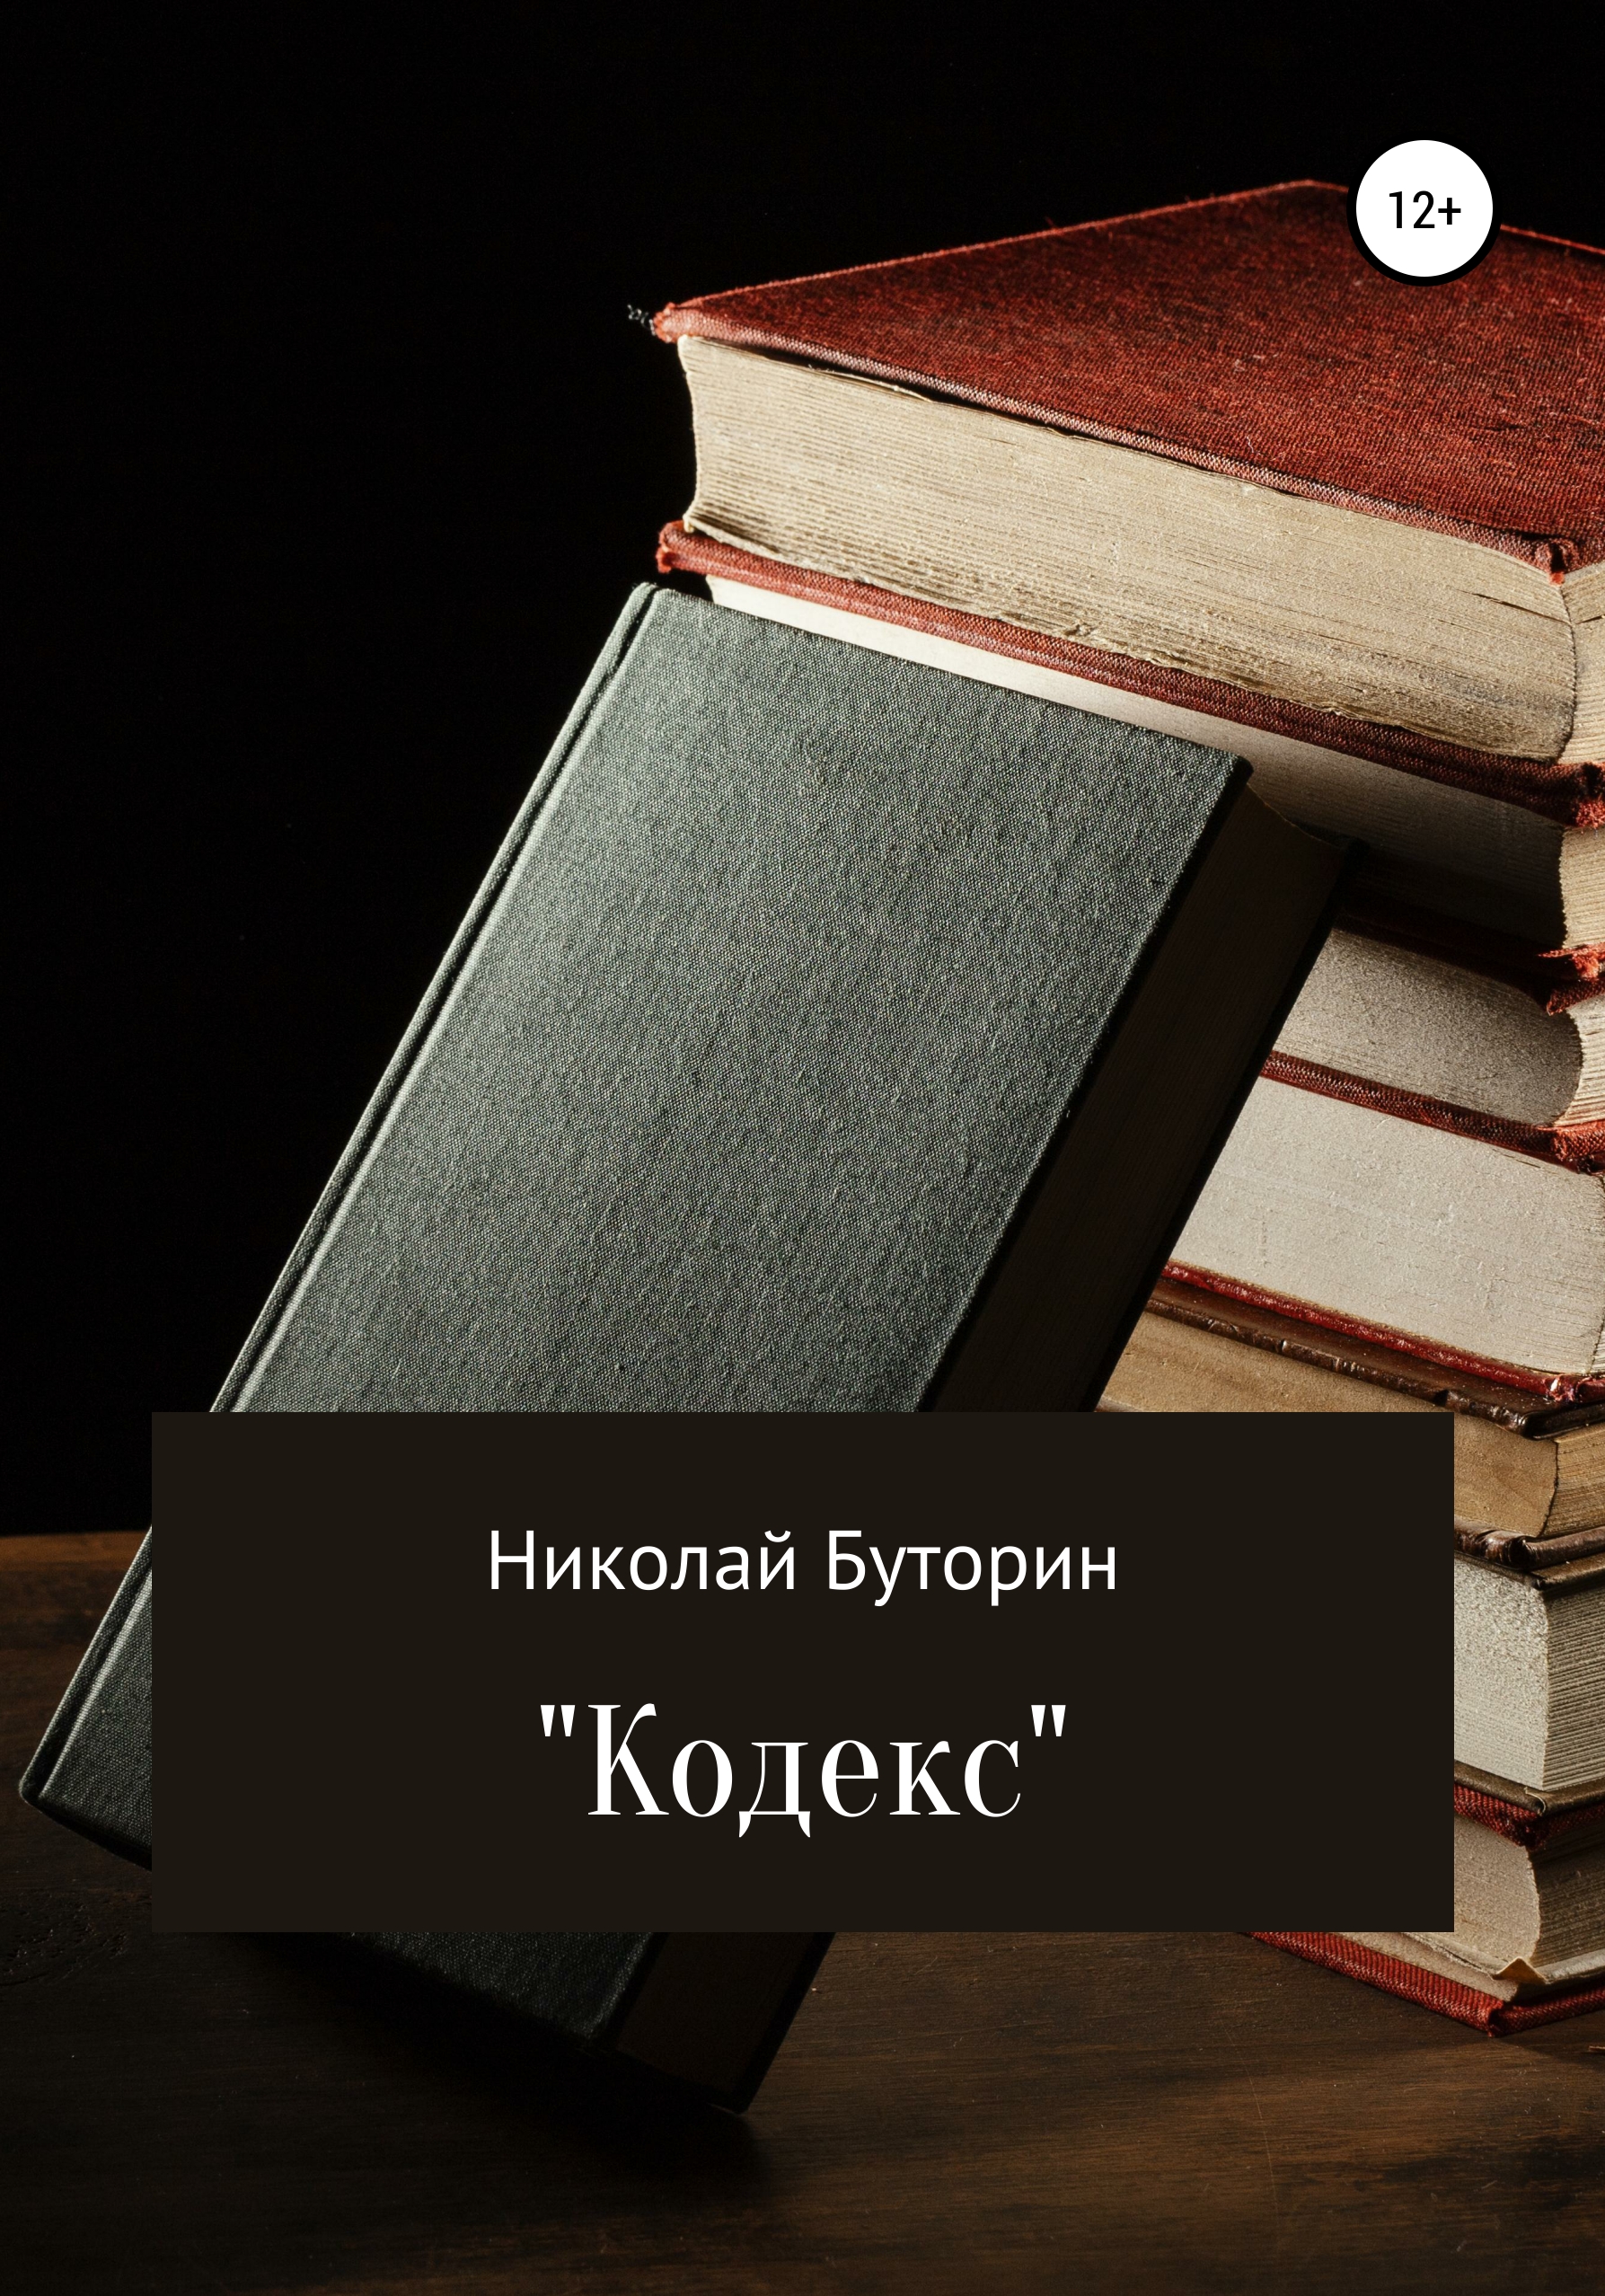 Кодекс – Николай Буторин